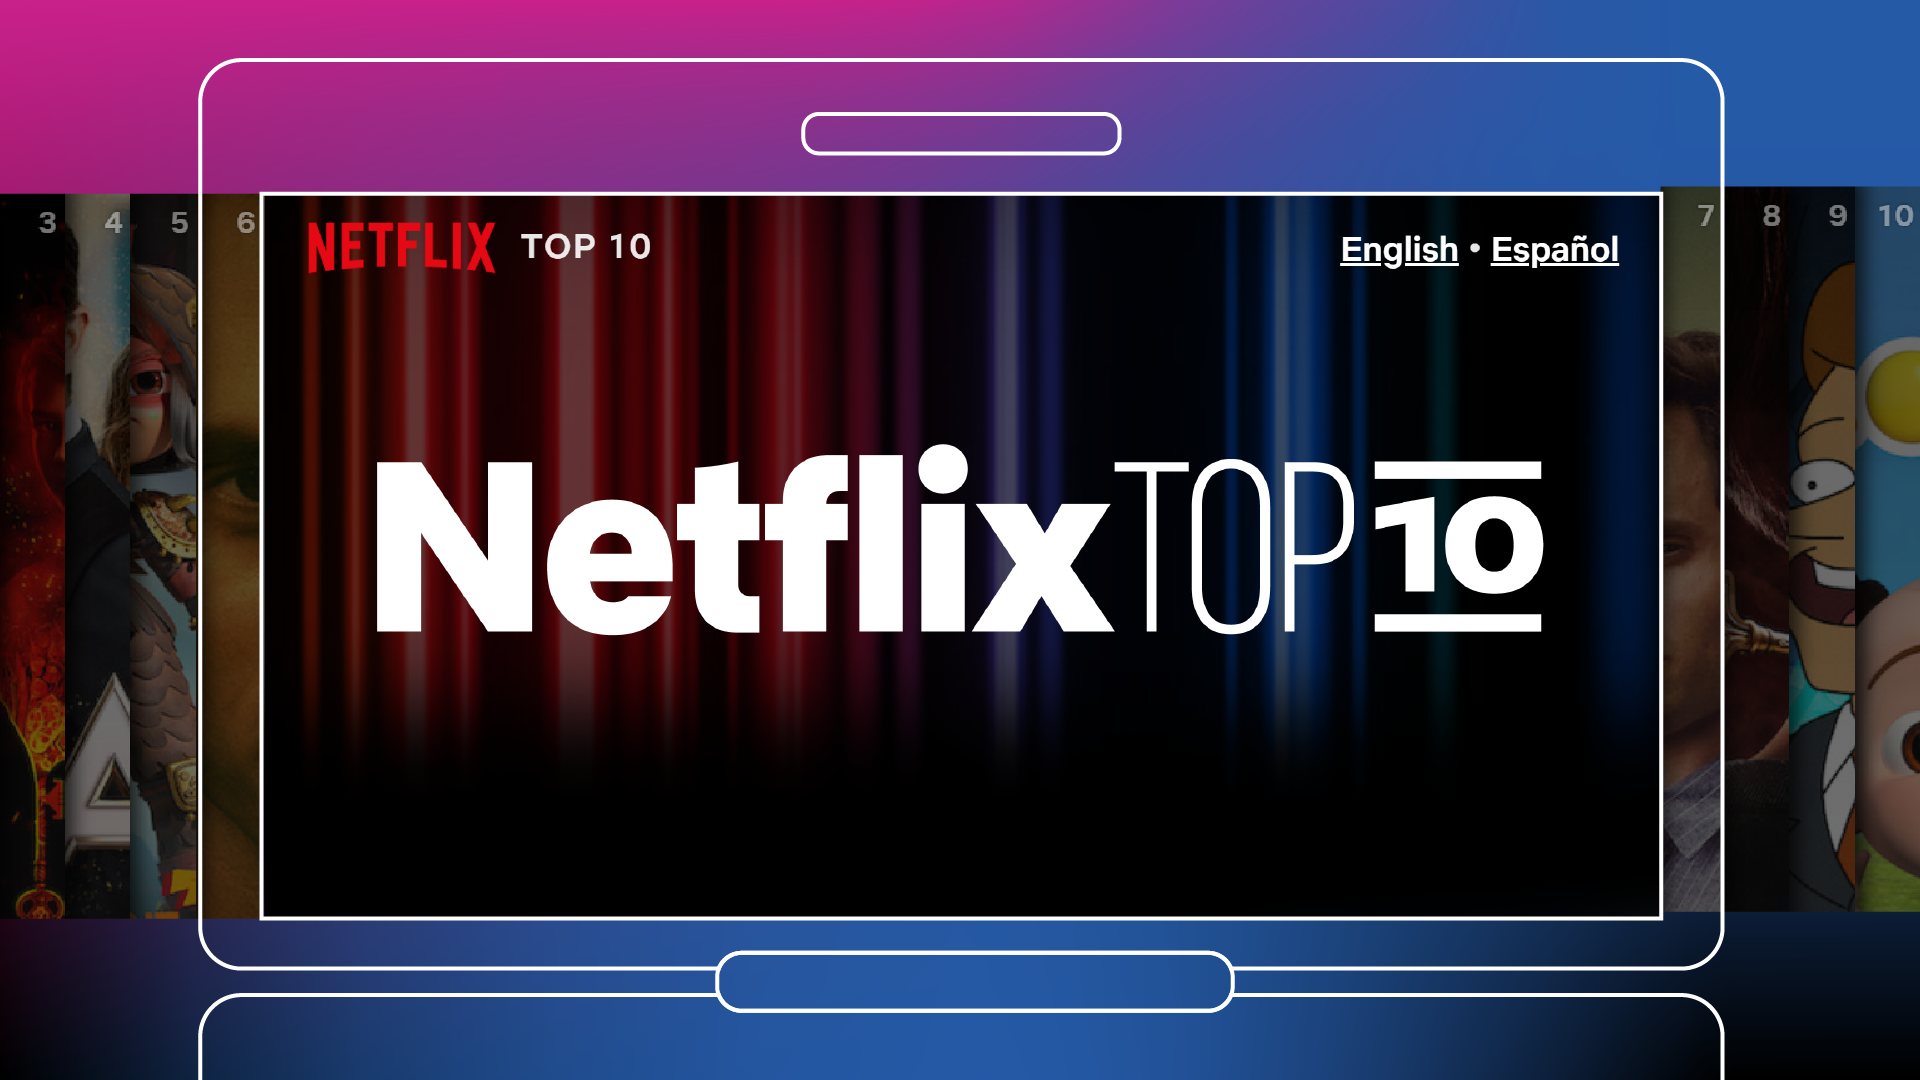 Sevdiğim Tüm Ölçümlere: Yeni “Netflix Top 10” Listemiz Karşınızda